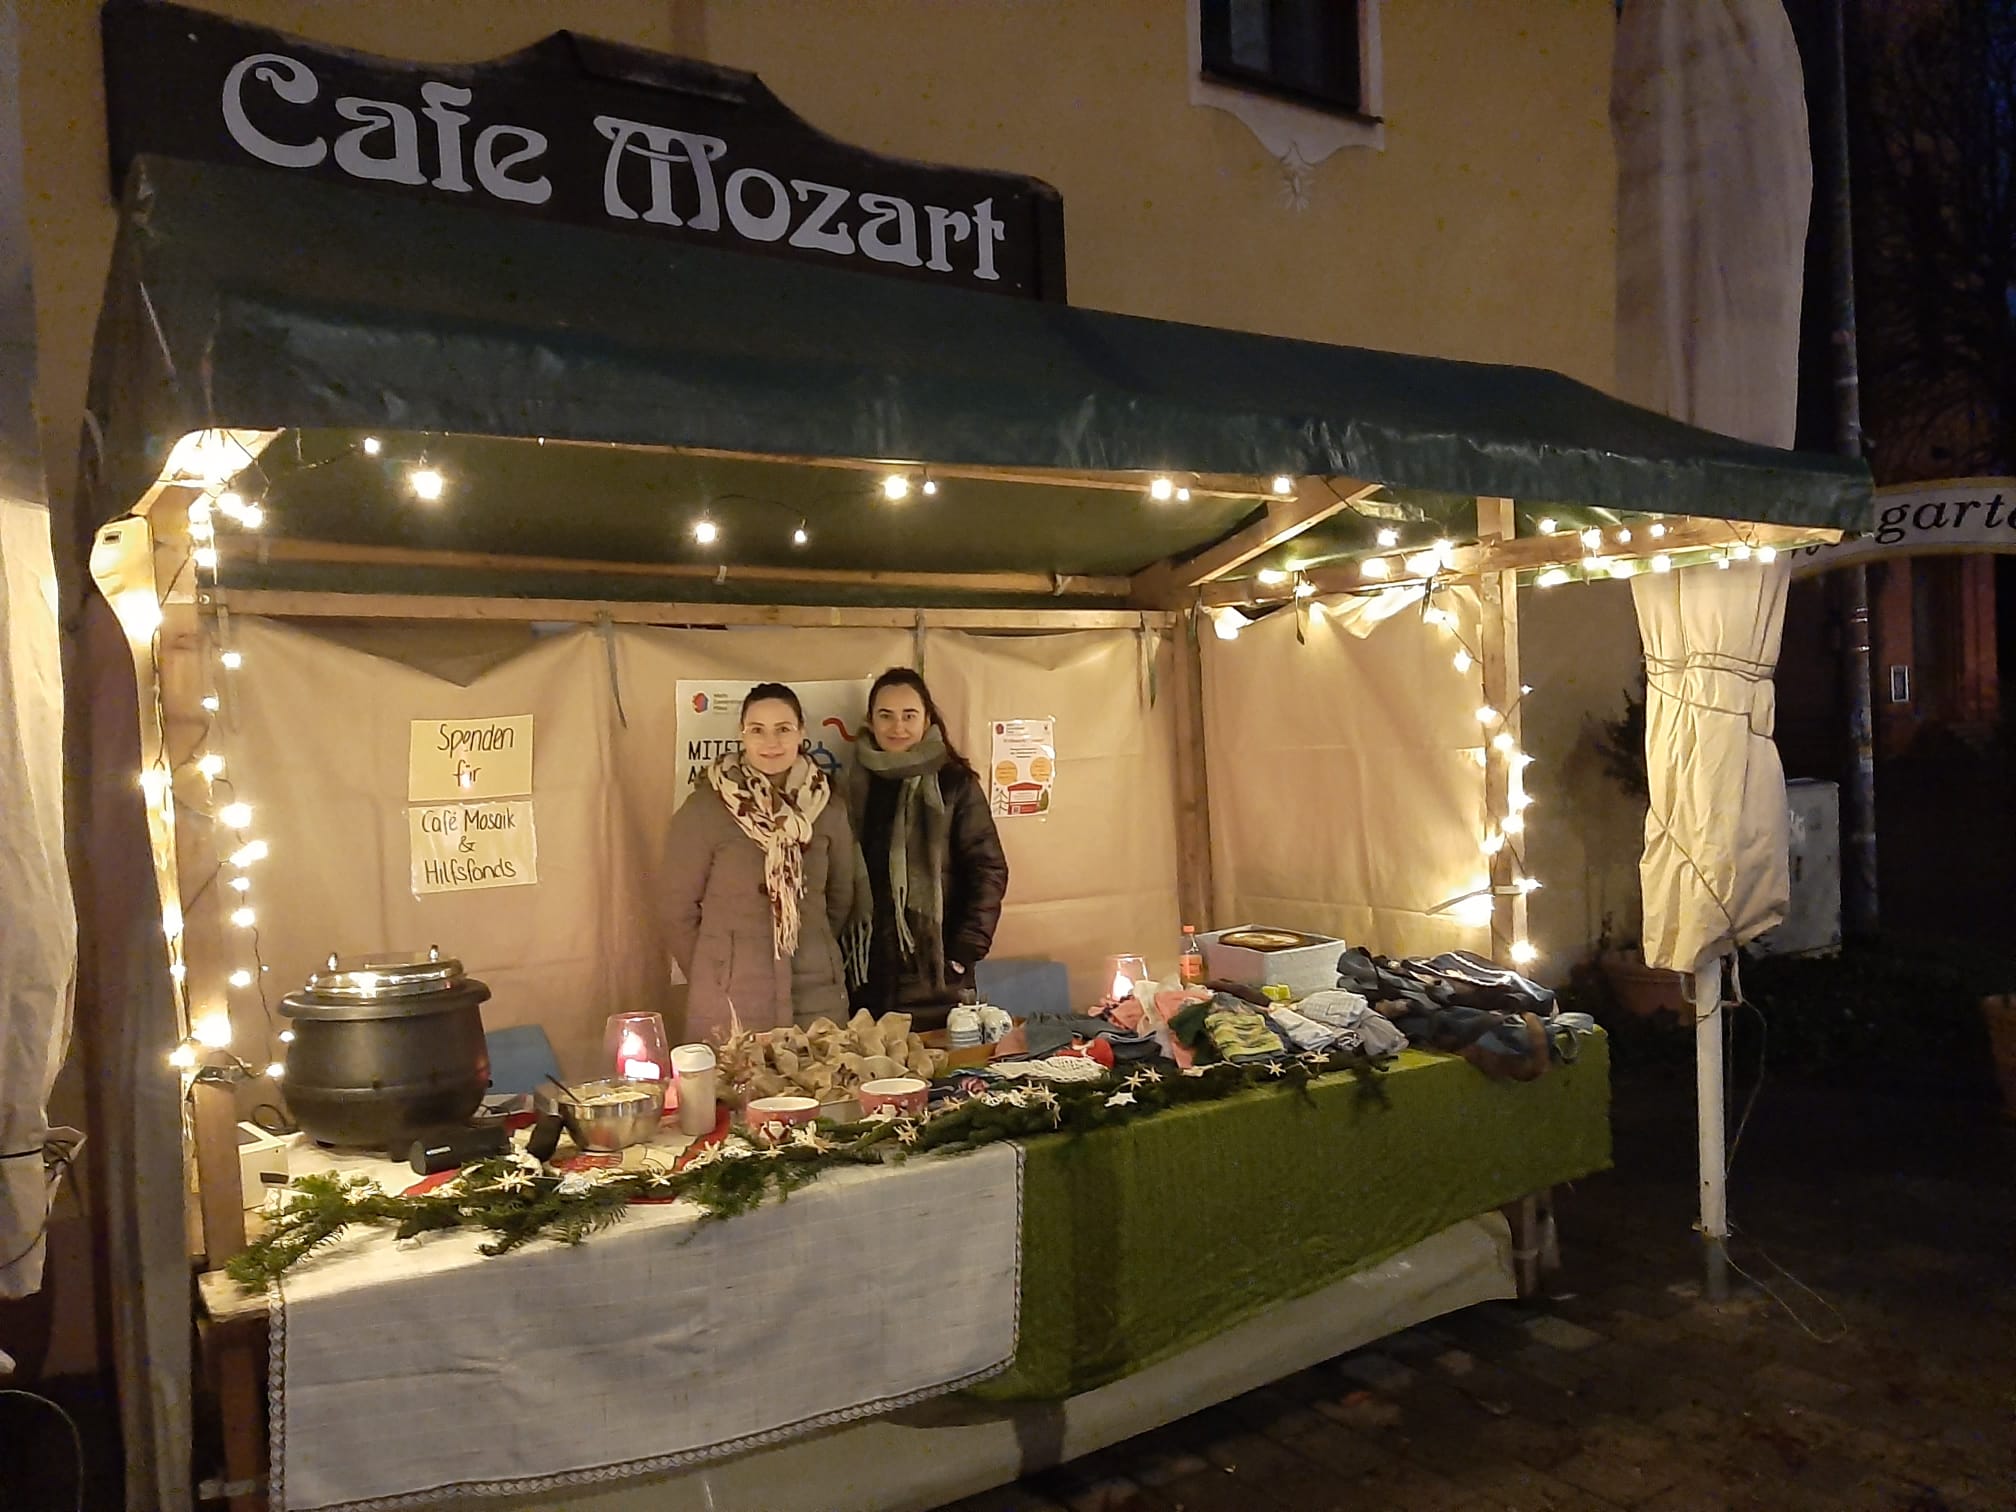 Zwei junge Frauen stehen in einer beleuchteten Weihnachtsbude vor dem Cafe Mozart.